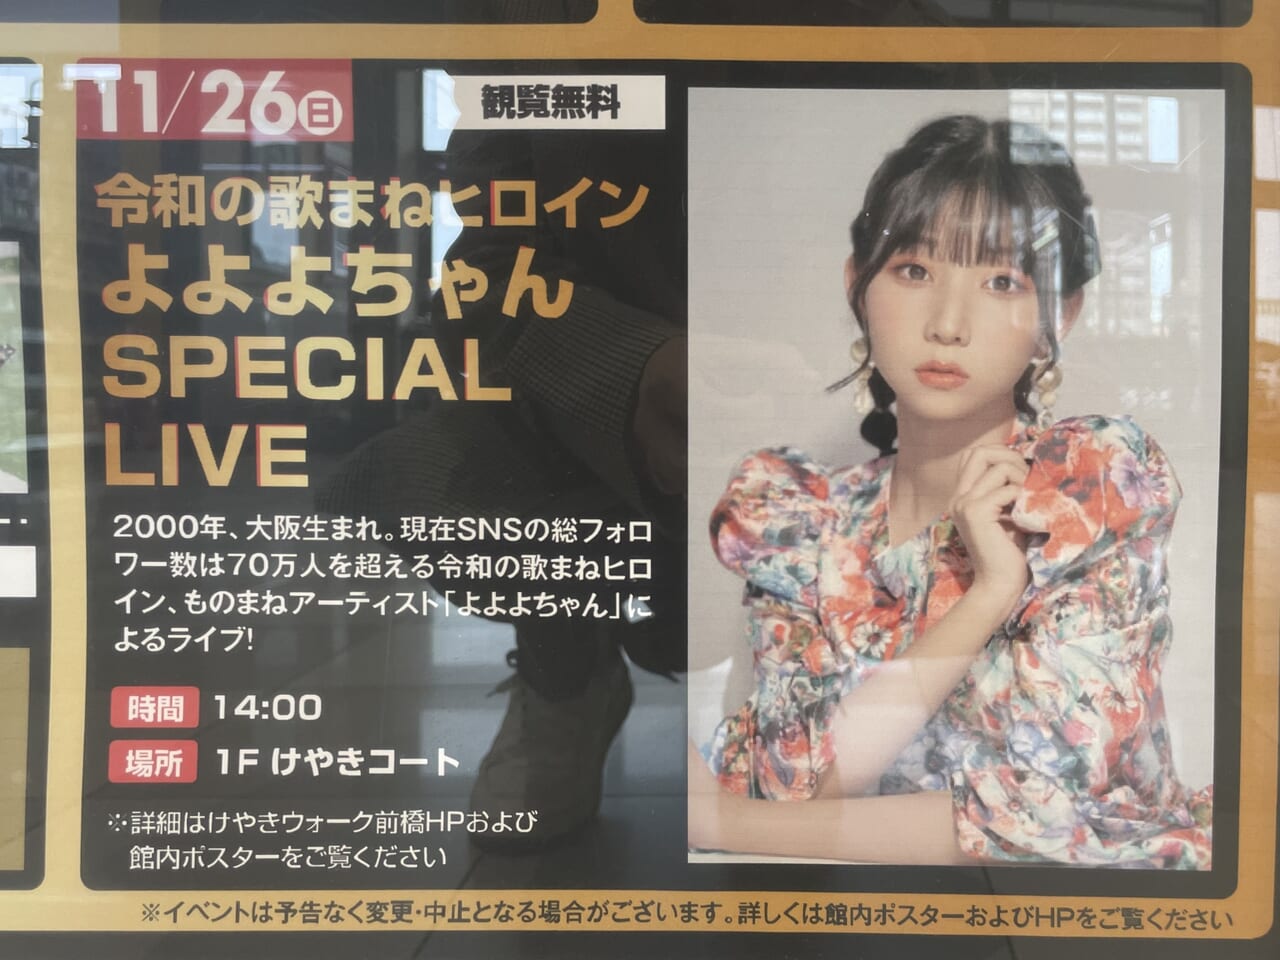 「令和の歌まねヒロイン よよよちゃんSPECIAL LIVE」開催告知のポスター